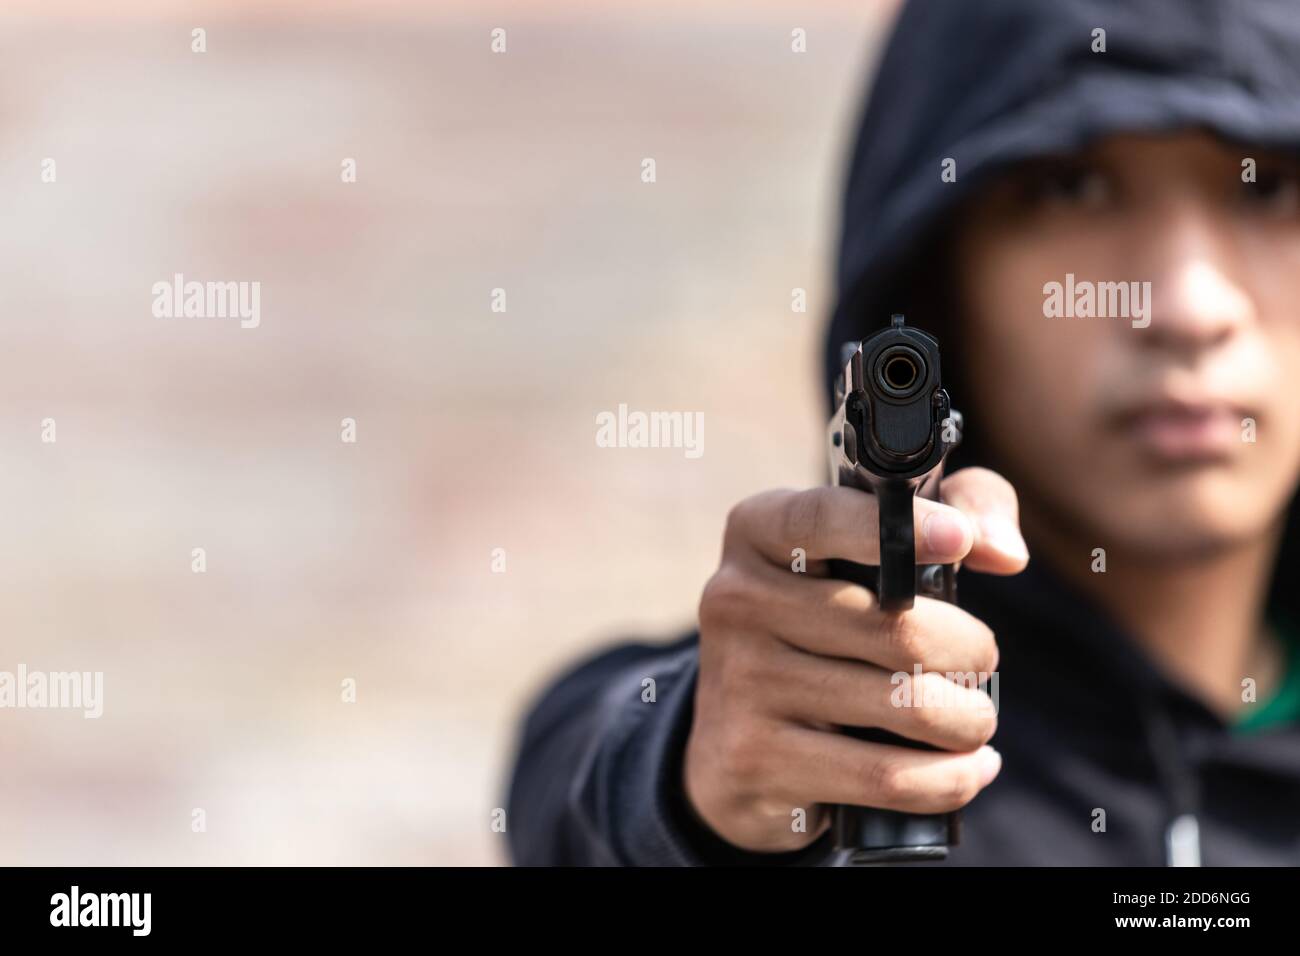 Le gangster a dirigé un pistolet vers la caméra. Un voleur pointant un fusil vers la cible, focus sélectif sur le canon avant, focus flou. Banque D'Images